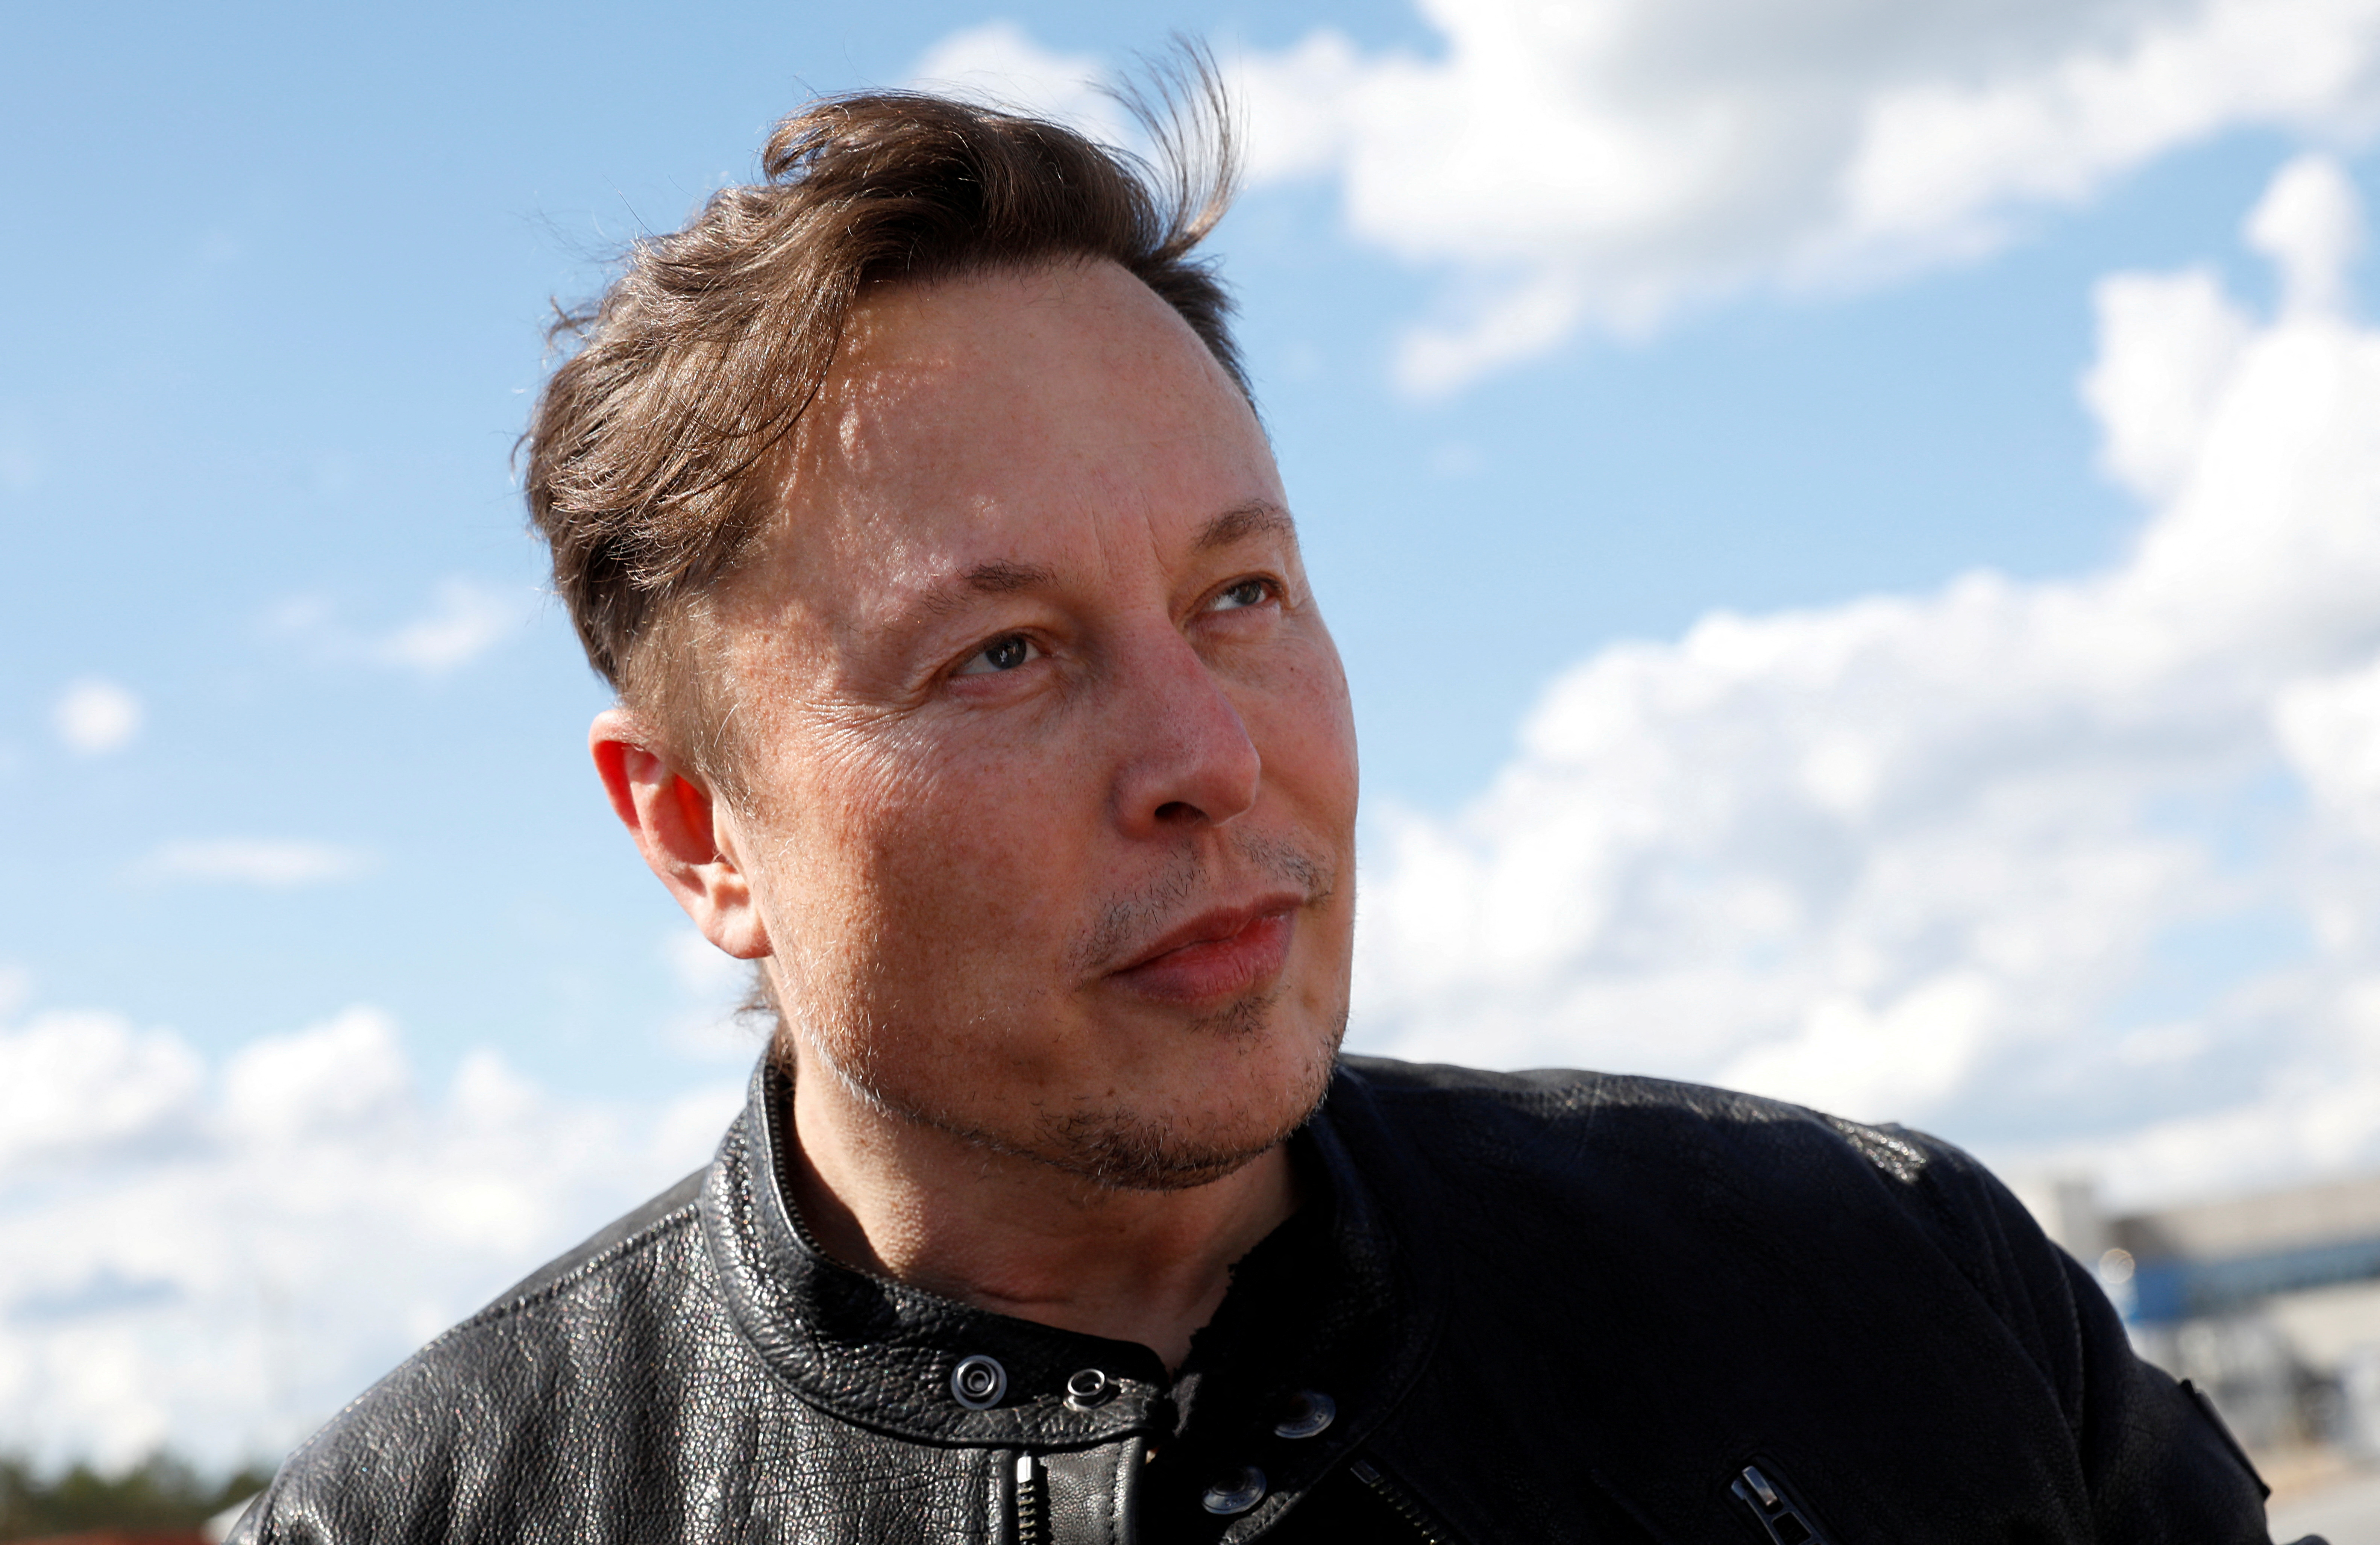 Craignant d'être forcé d'acheter Twitter, Elon Musk vend pour près de 7 milliards de dollars d'actions Tesla